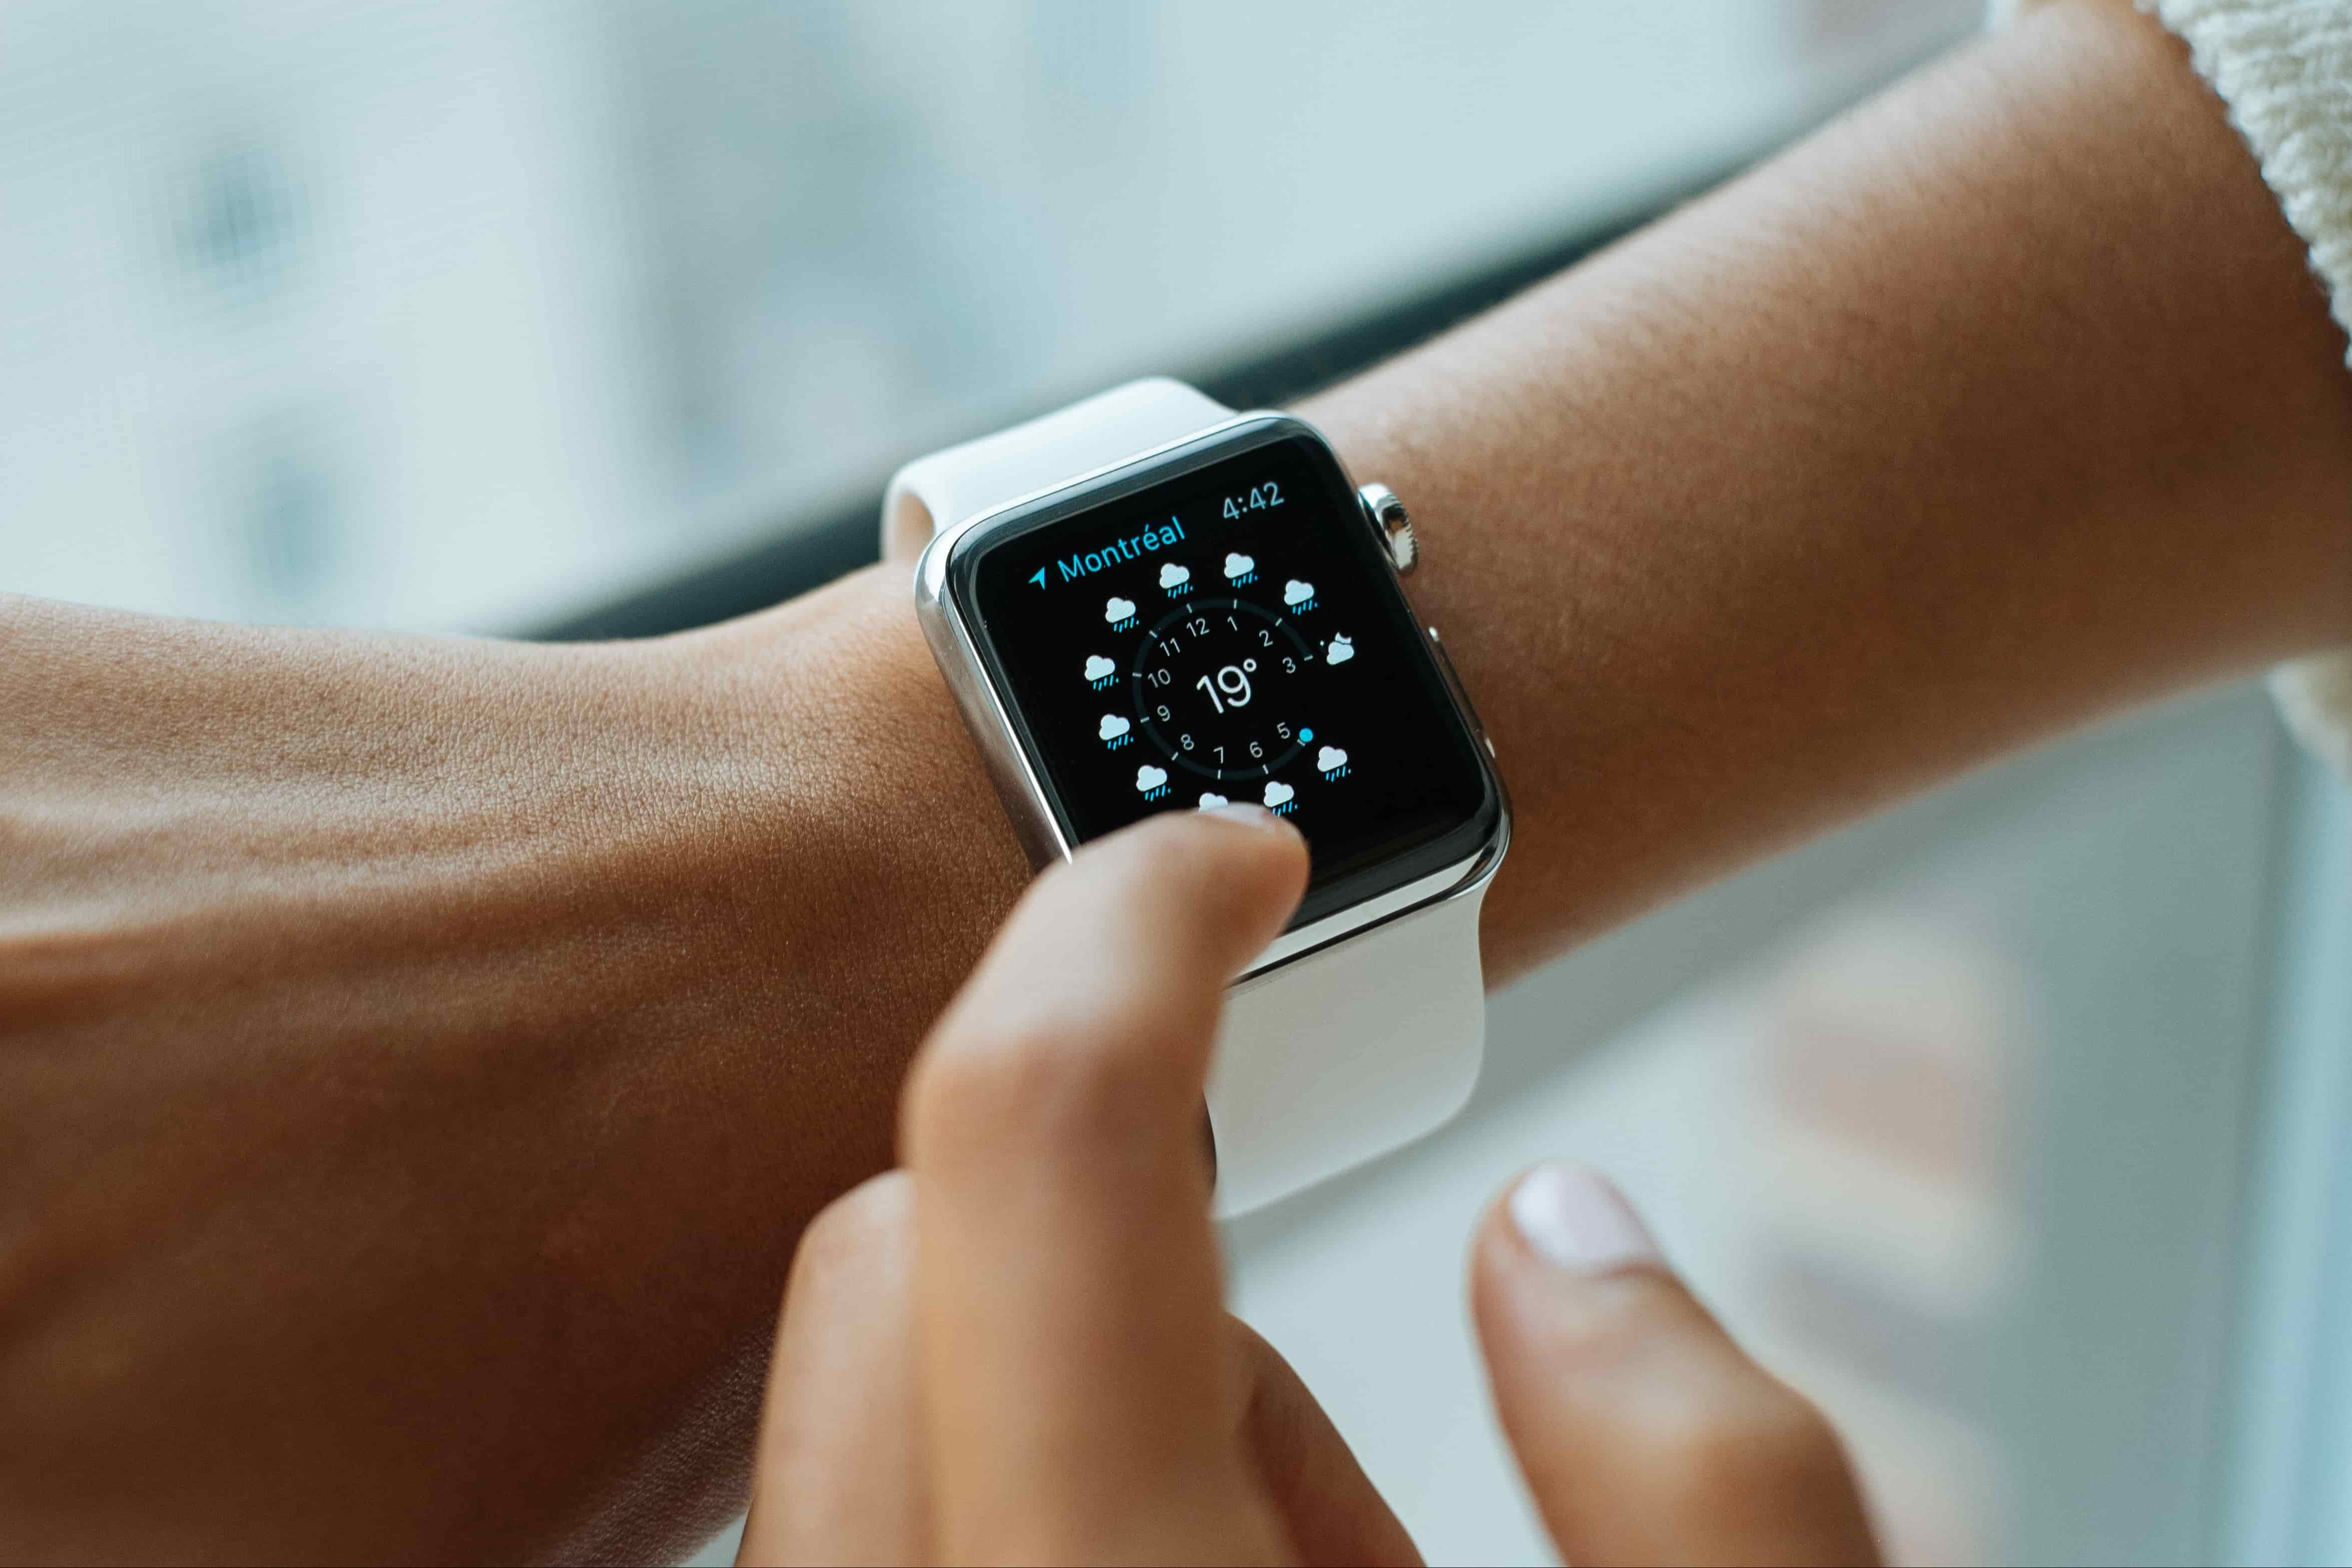 蘋果規避專利糾紛引發的銷售禁令 將移除Apple Watch血氧檢測功能